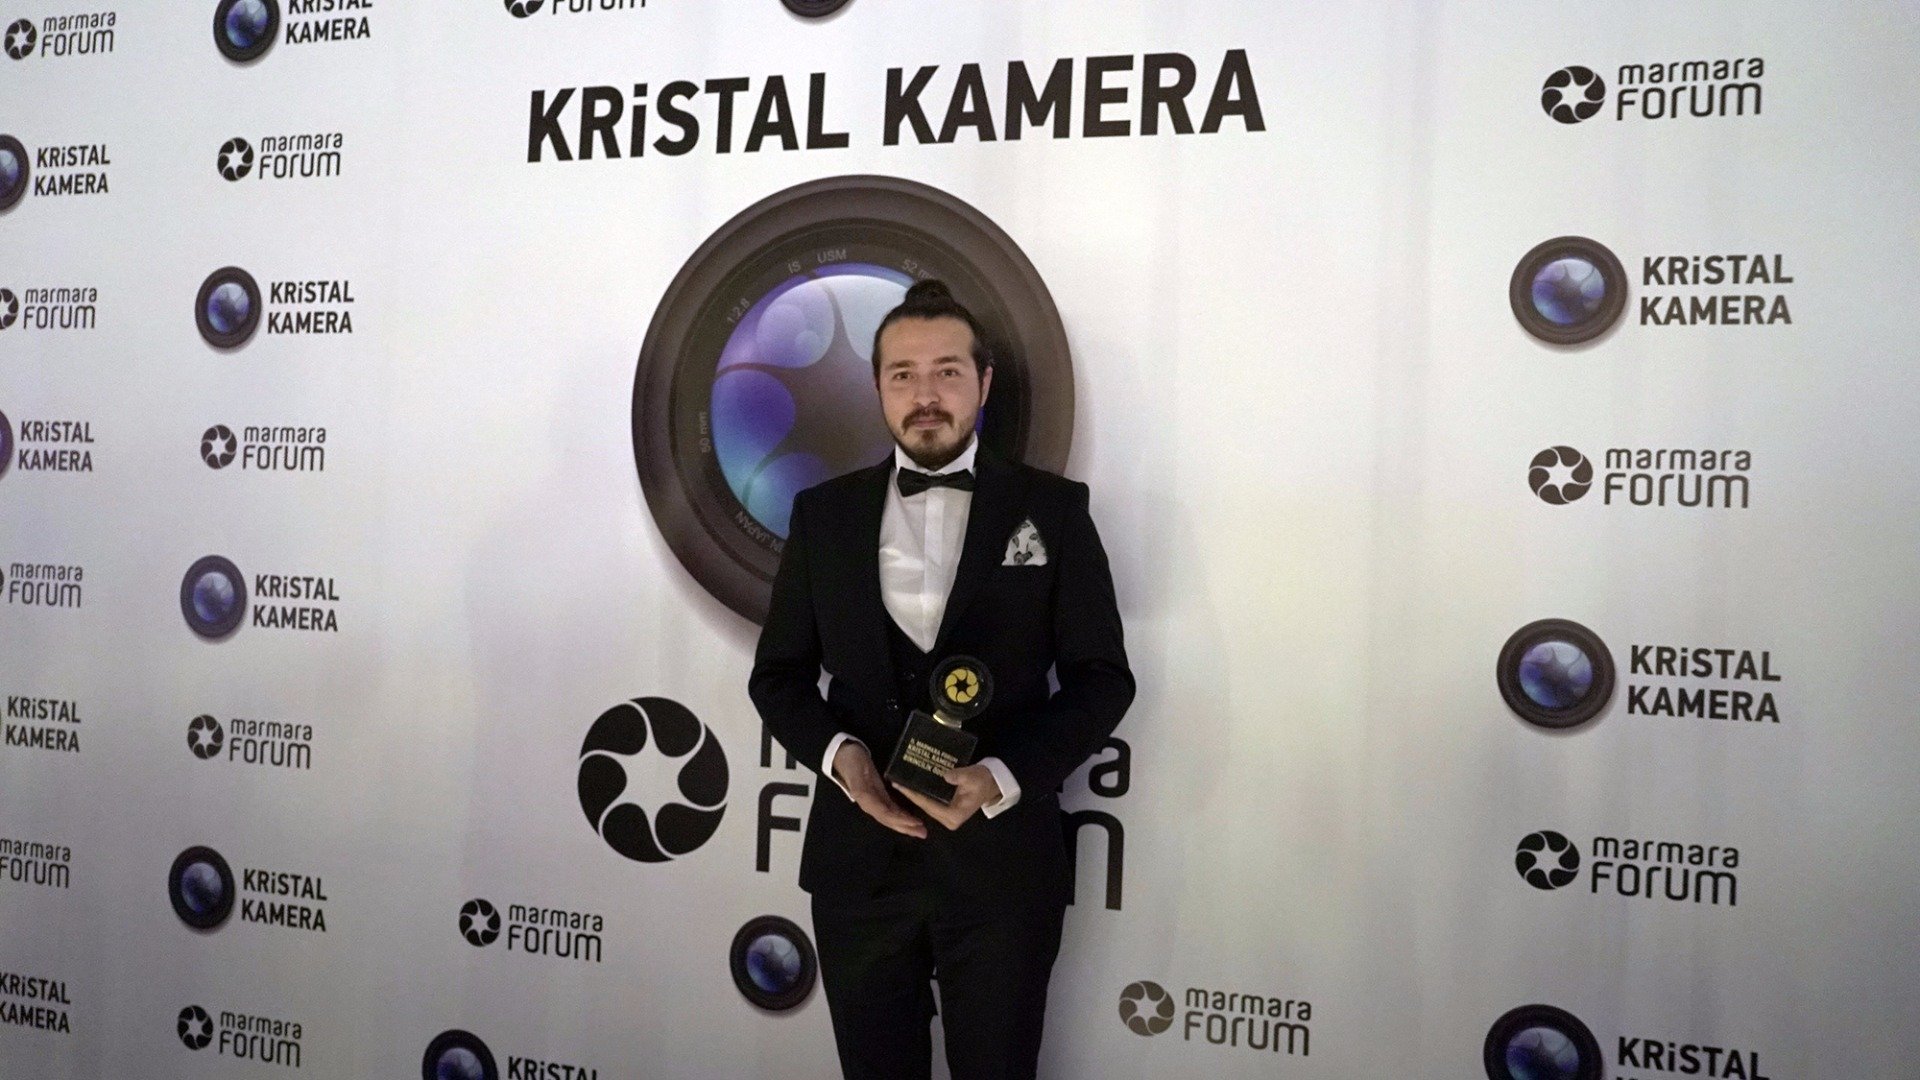 Marmara Forum Kristal Kamera Kısa Film Yarışması’na ev sahipliği yaptı